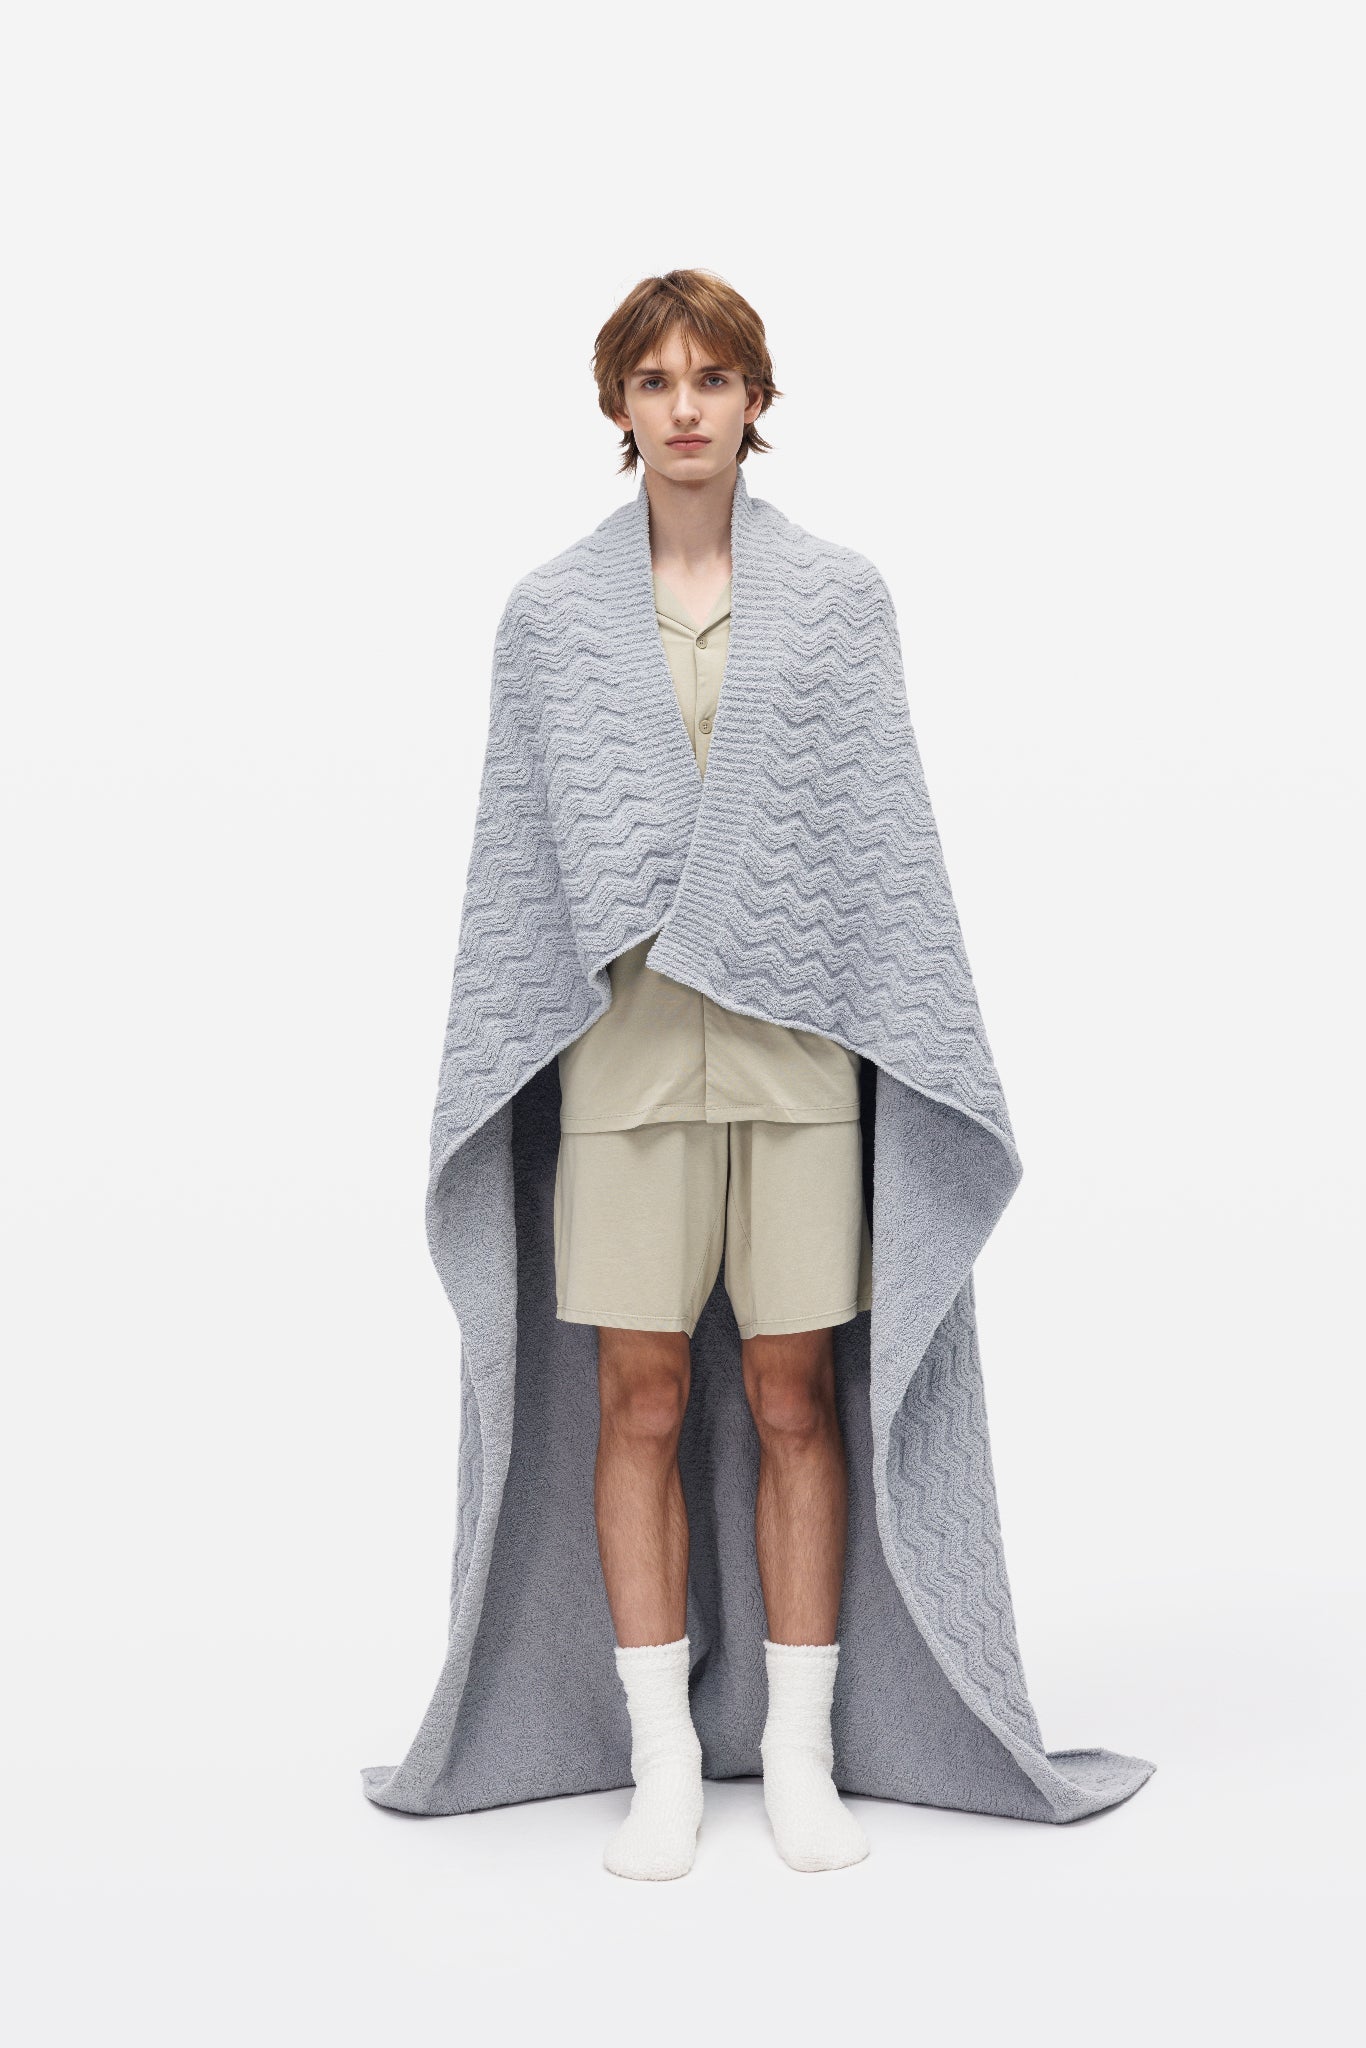 Grey Wavy Pattern Plush Throw Blanket - Throw - Touchofgod.co